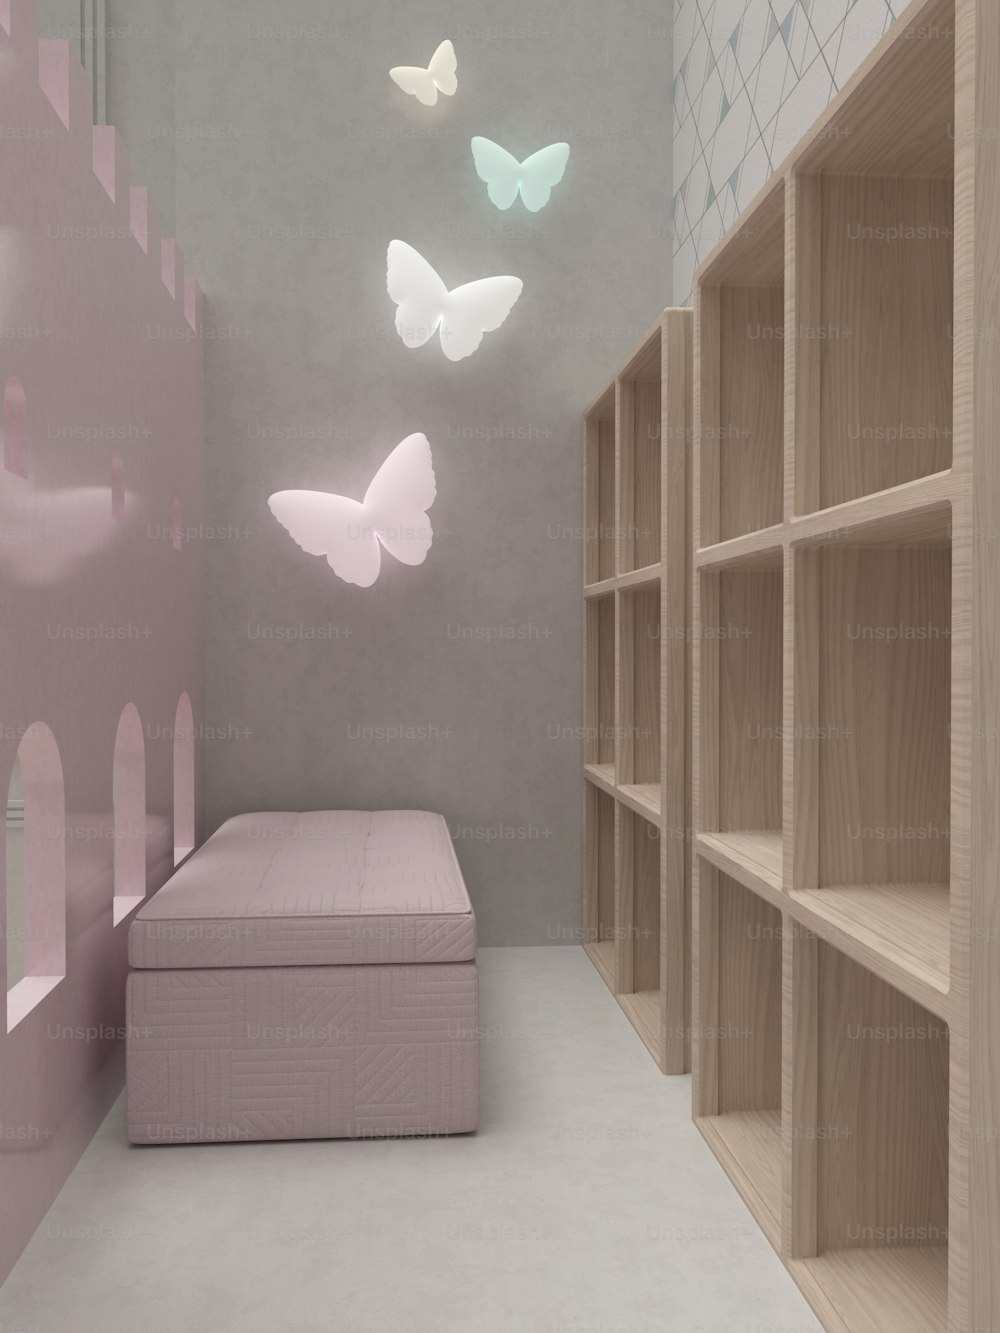 壁にベッド、棚、蝶がある部屋